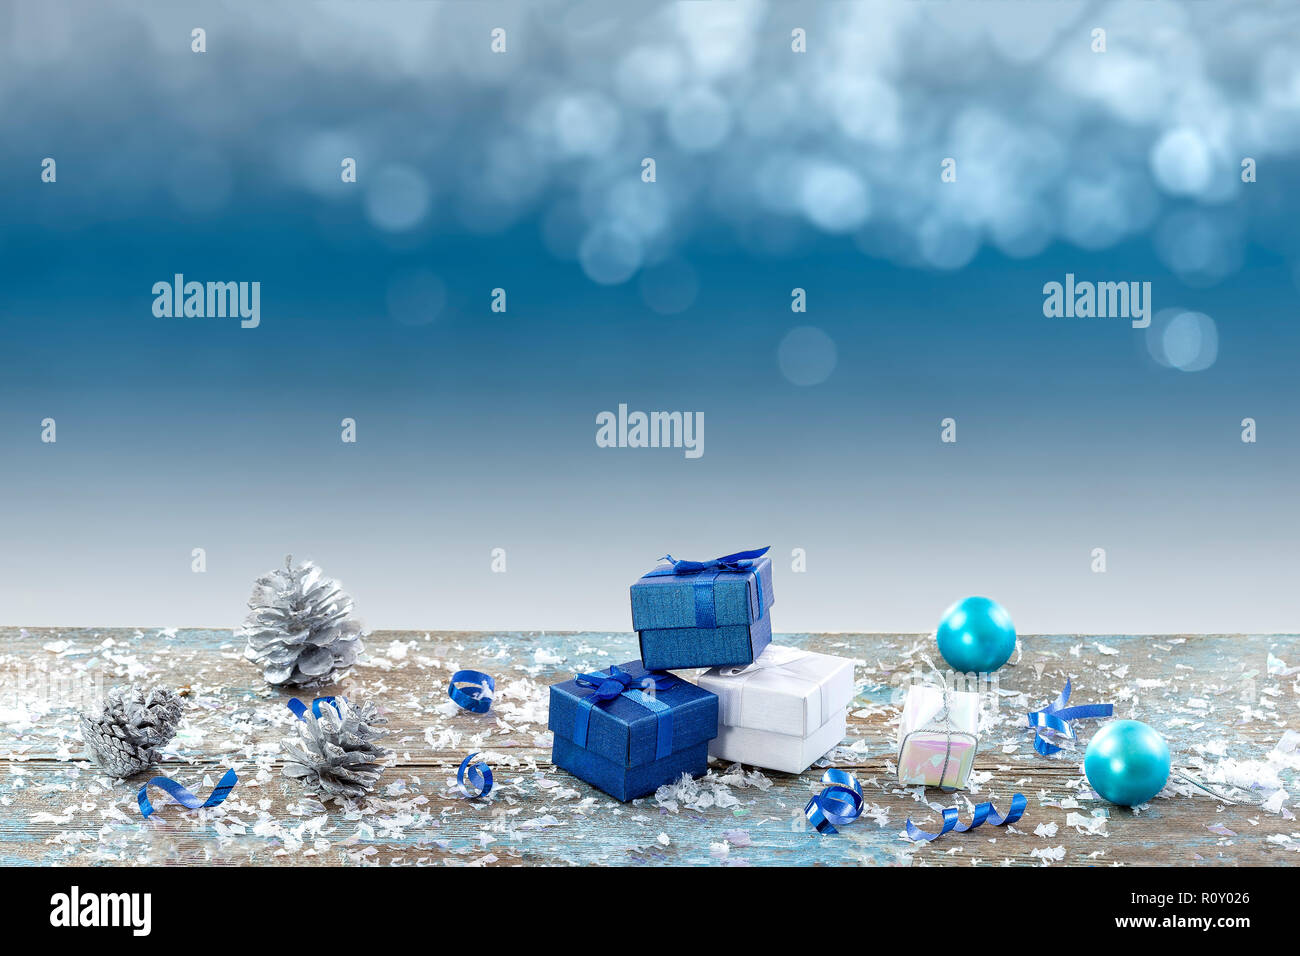 Noël arrière-plan bleu avec cône de pin , boîte cadeau bleu et boules de Noël, des lumières sur fond bleu.. Banque D'Images